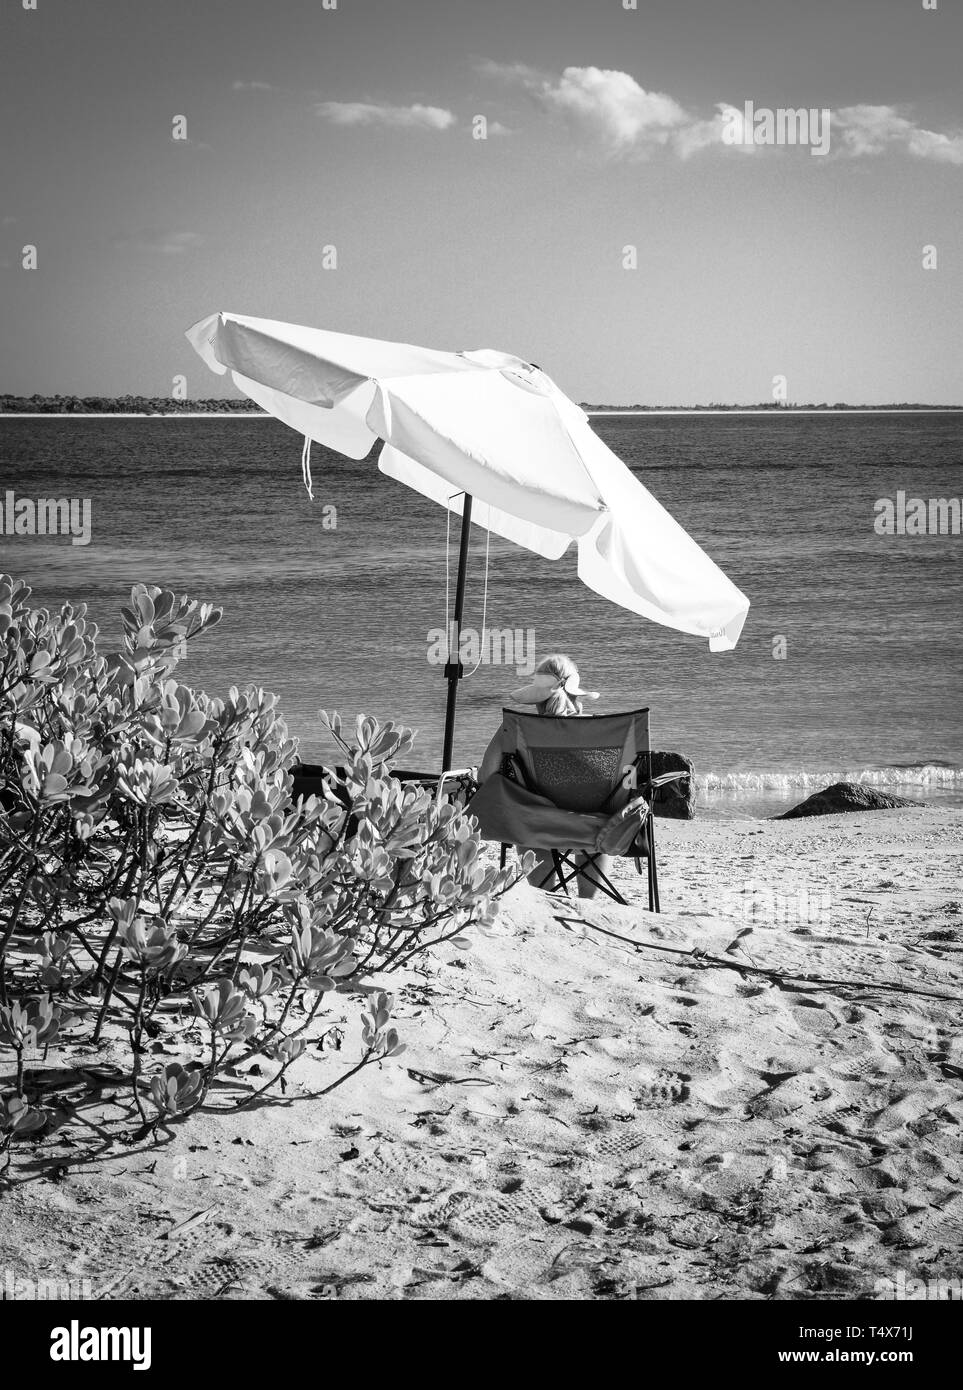 Une vue arrière d'une blonde woman relaxing dans une chaise de plage dans un cadre donnant sur le bord de l'eau bleue de son perchoir en noir et blanc Banque D'Images